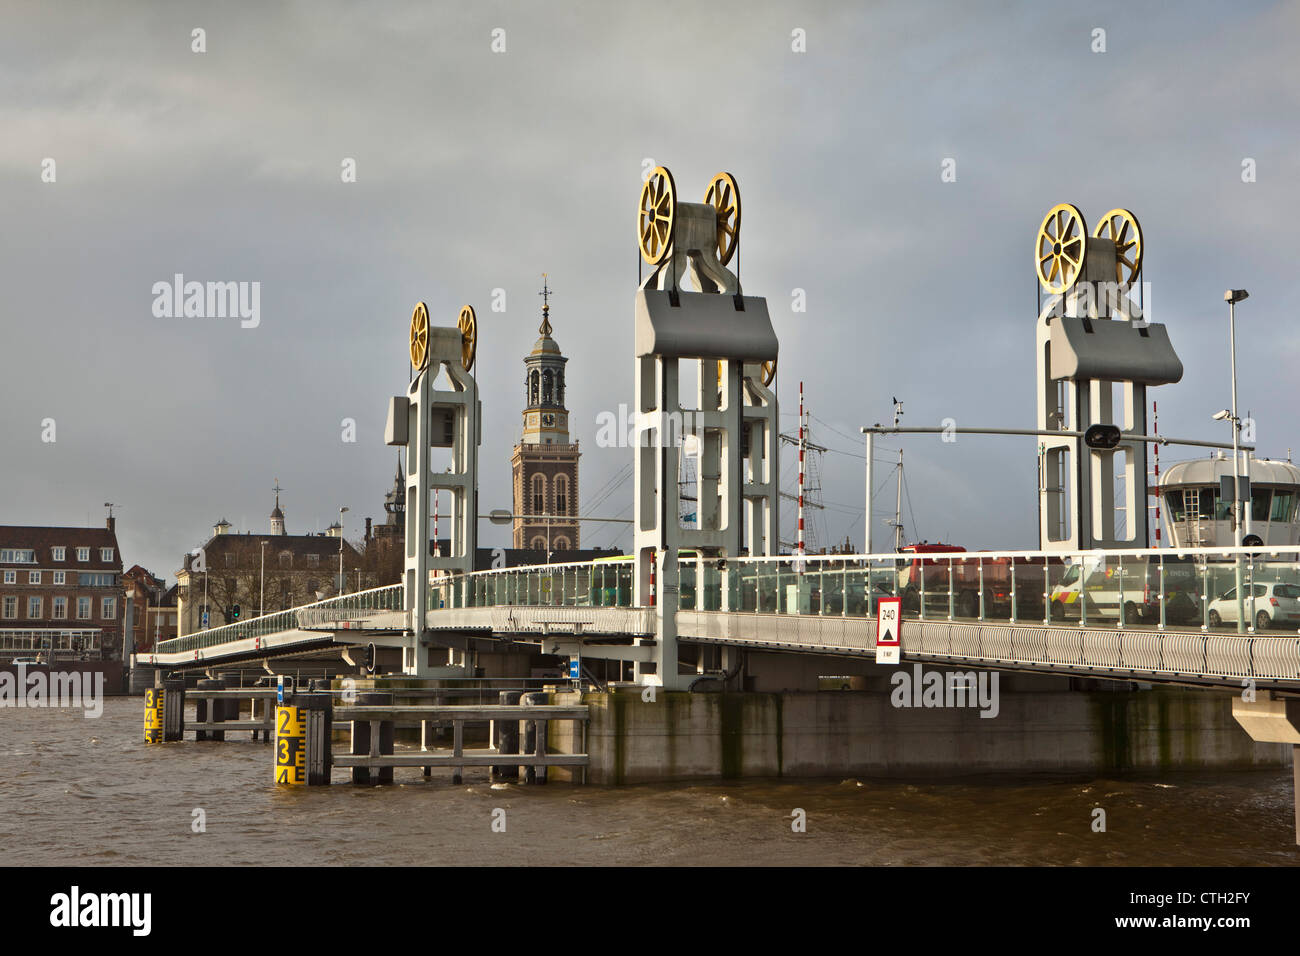 The Netherlands, Kampen, Skyline. Bridge over Ijssel River. High water. Stock Photo